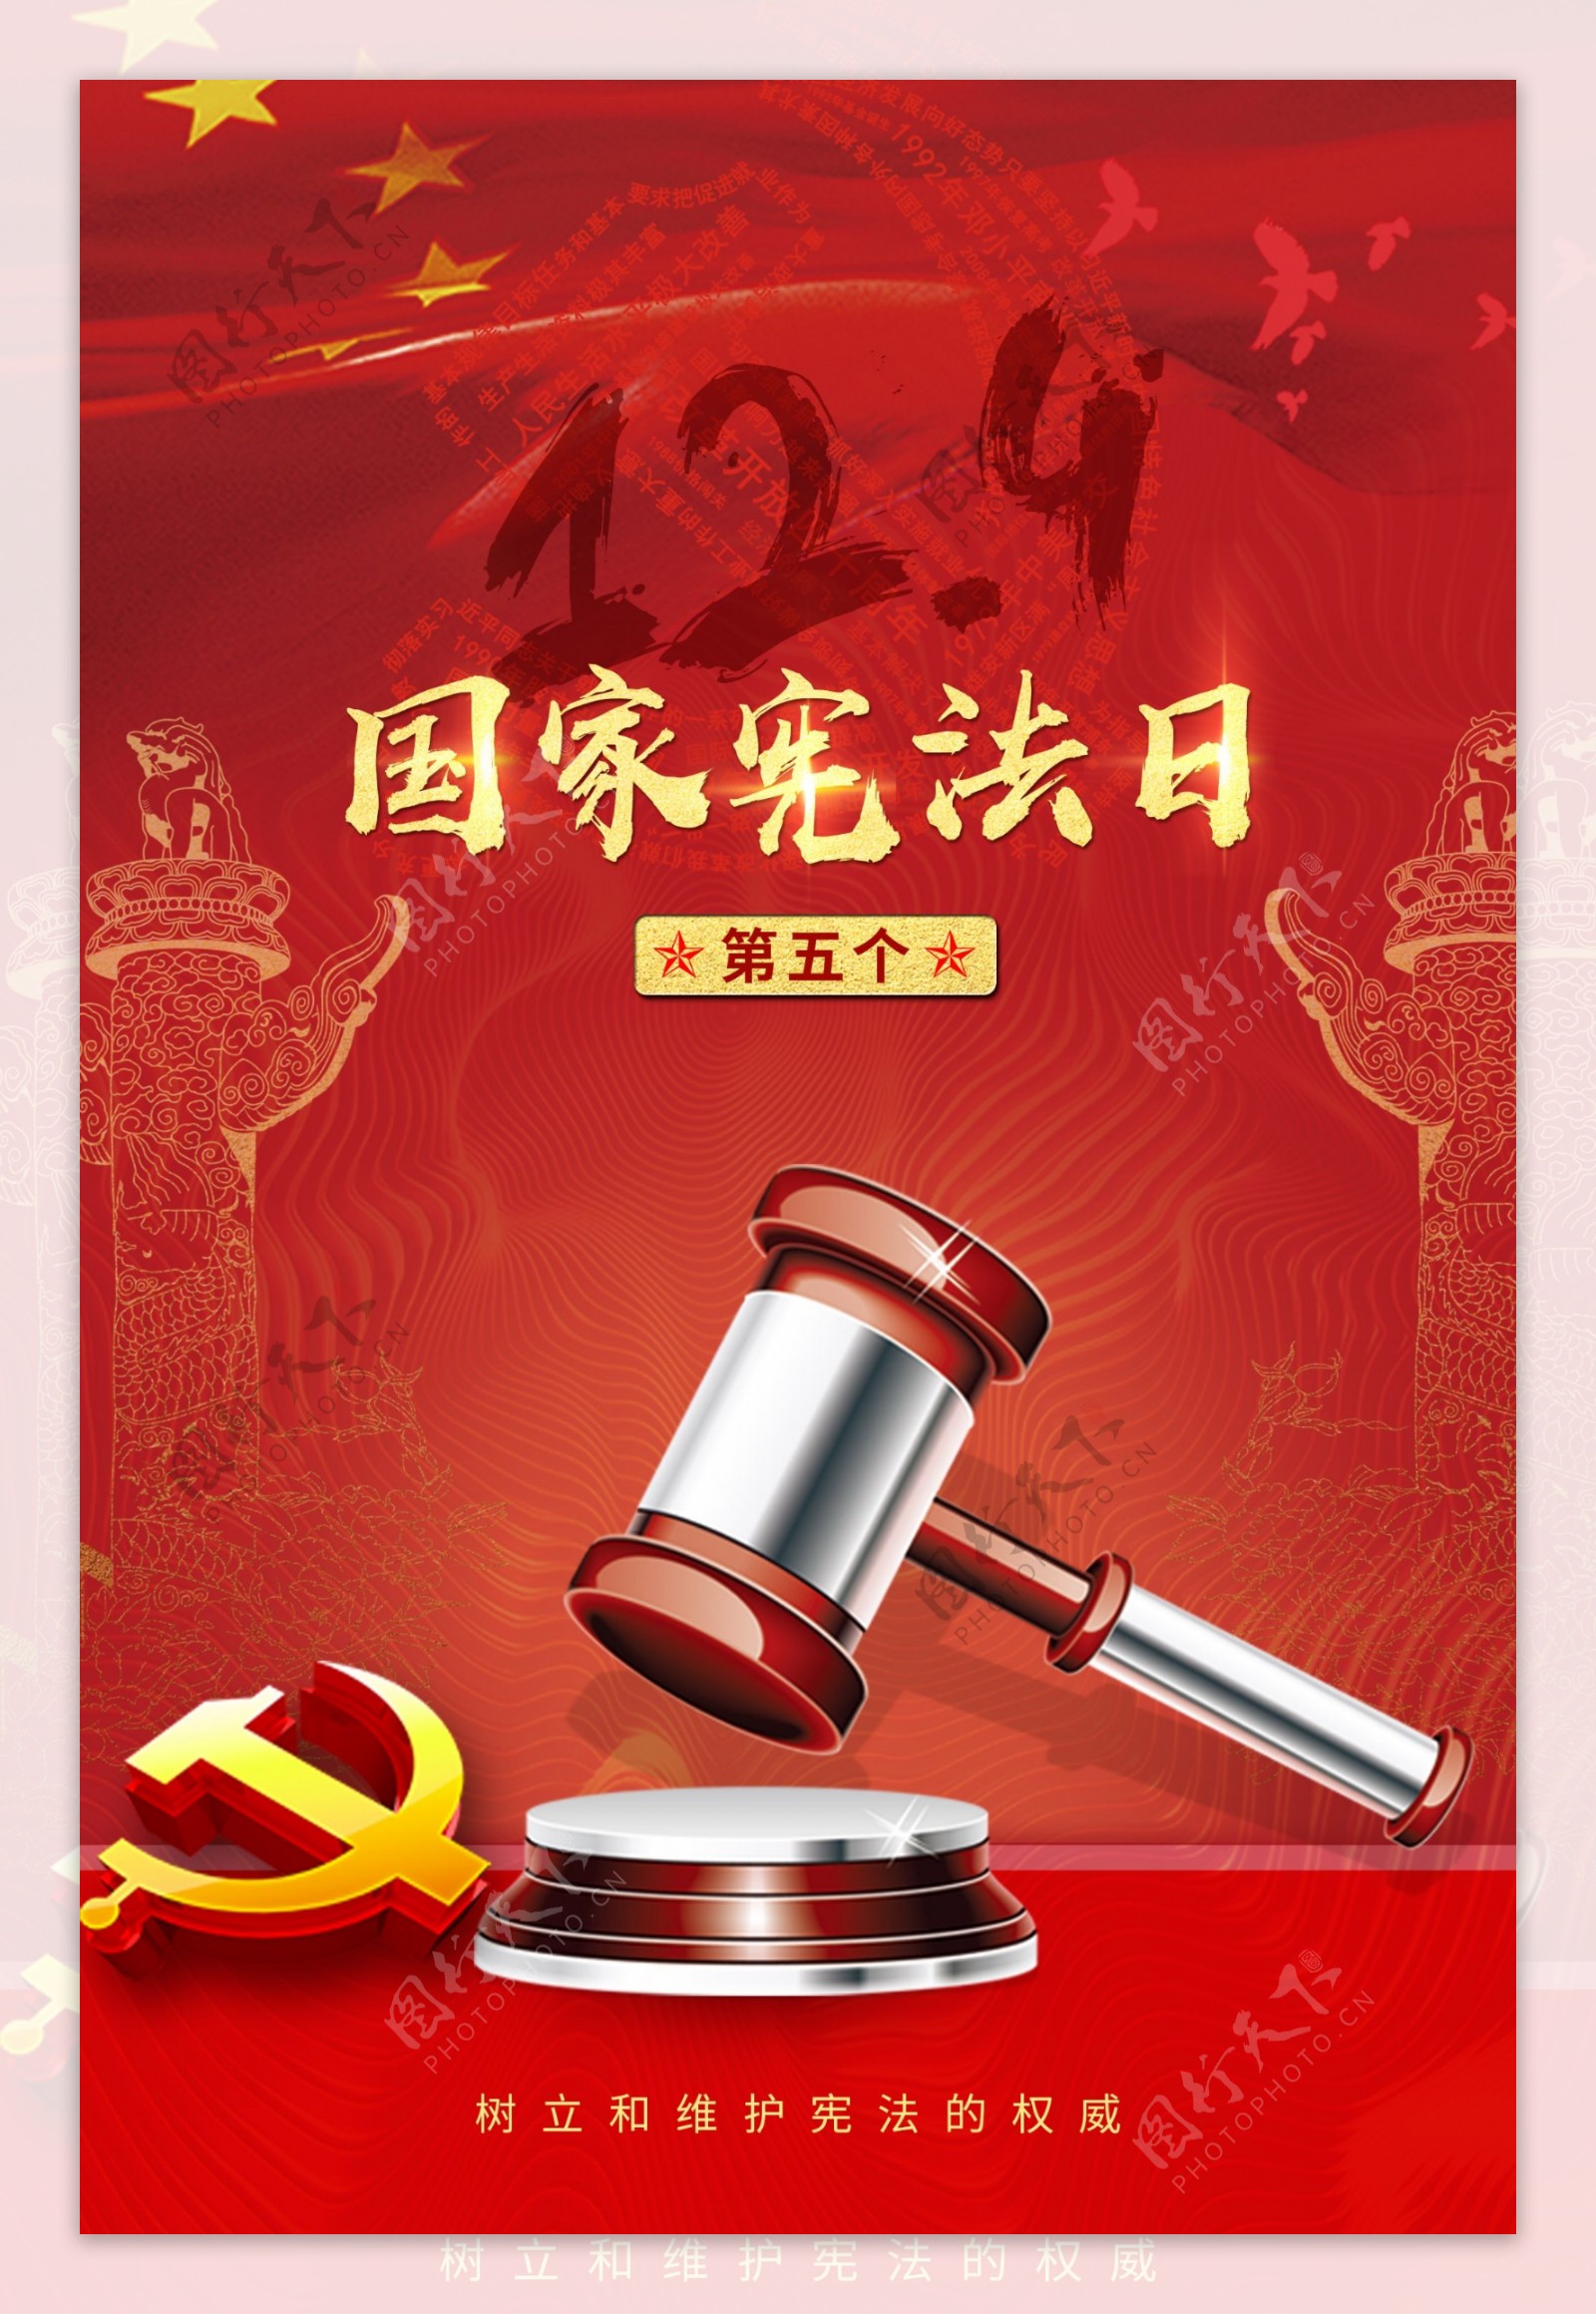 “弘扬宪法精神，推进国家治理体系和治理能力现代化”-云南安宁化工厂有限公司